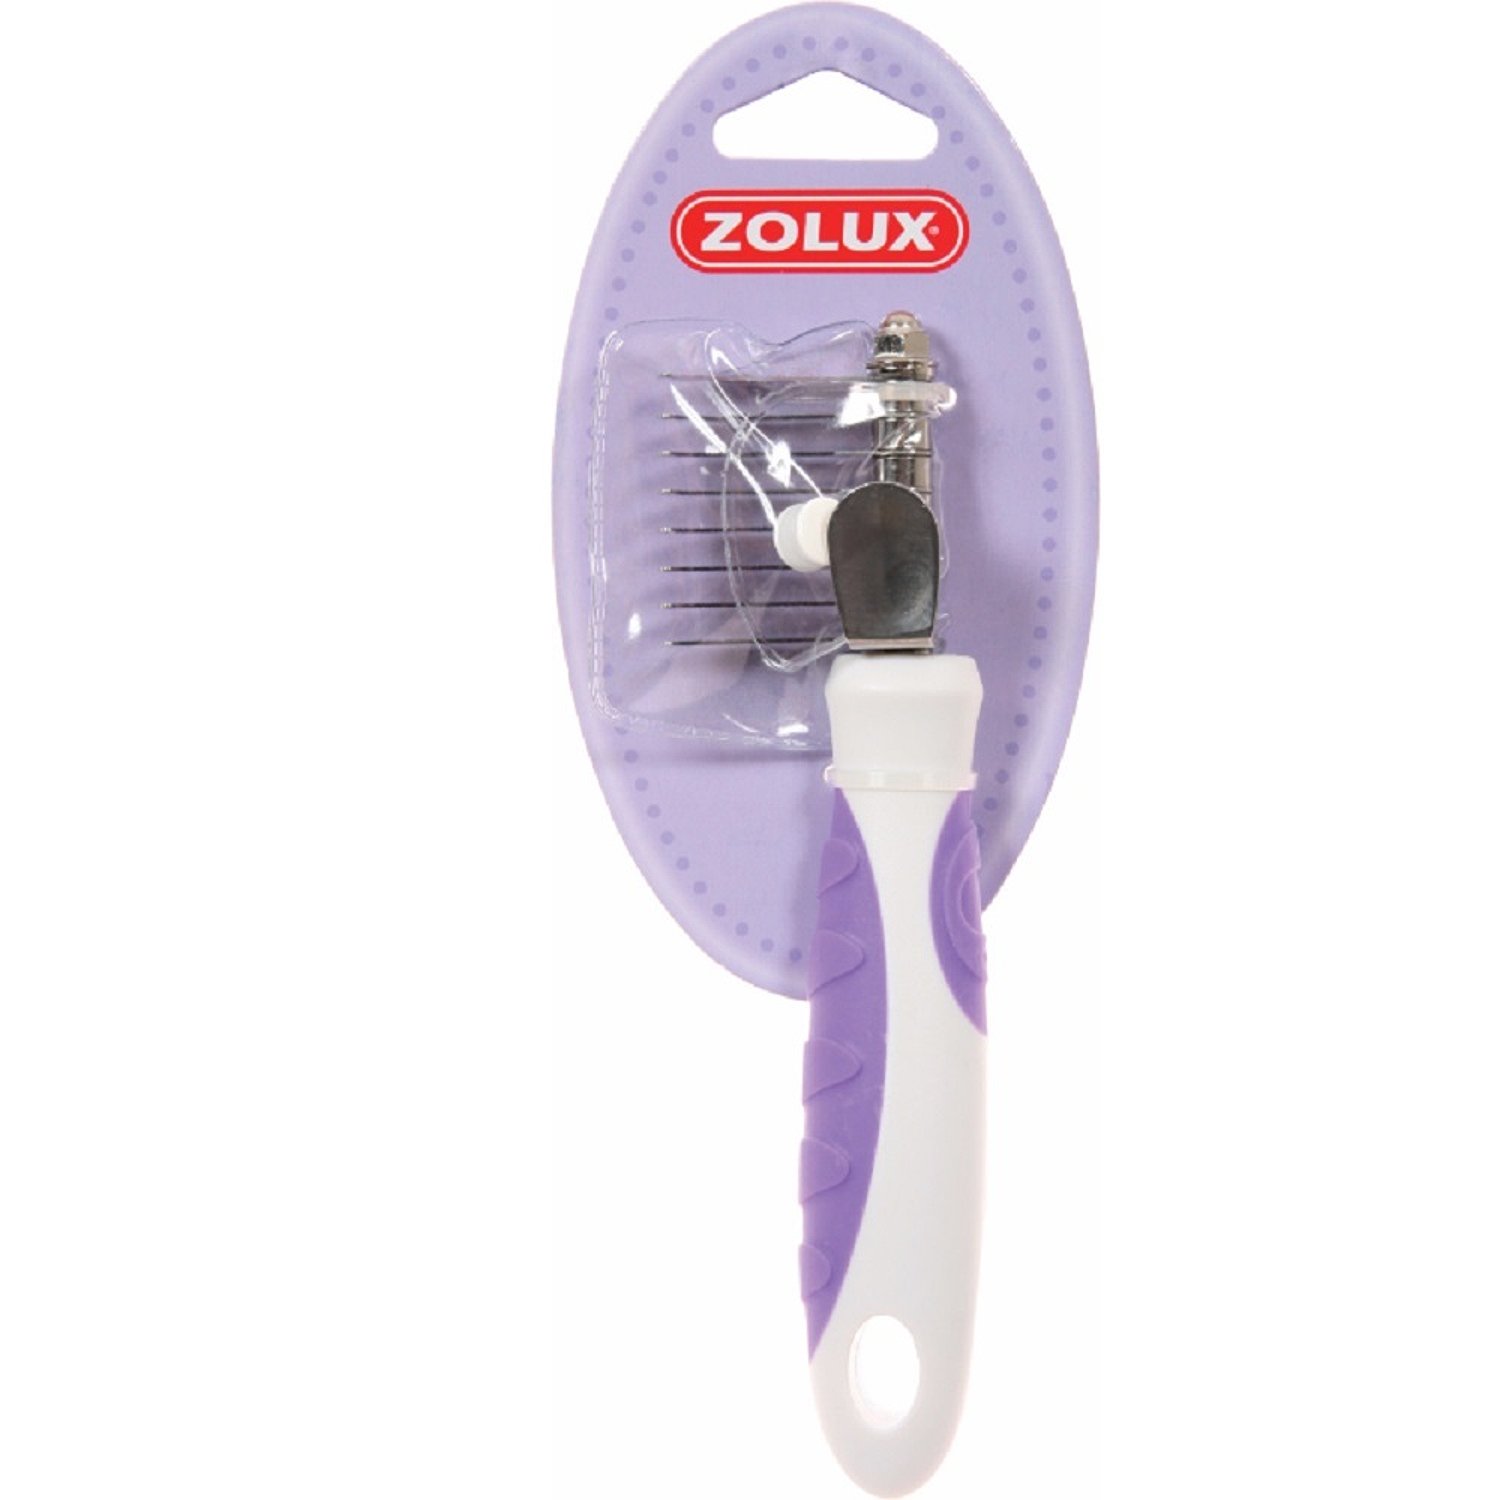 Колтунорез для кошек Zolux малый Бело-фиолетовый - фото 1